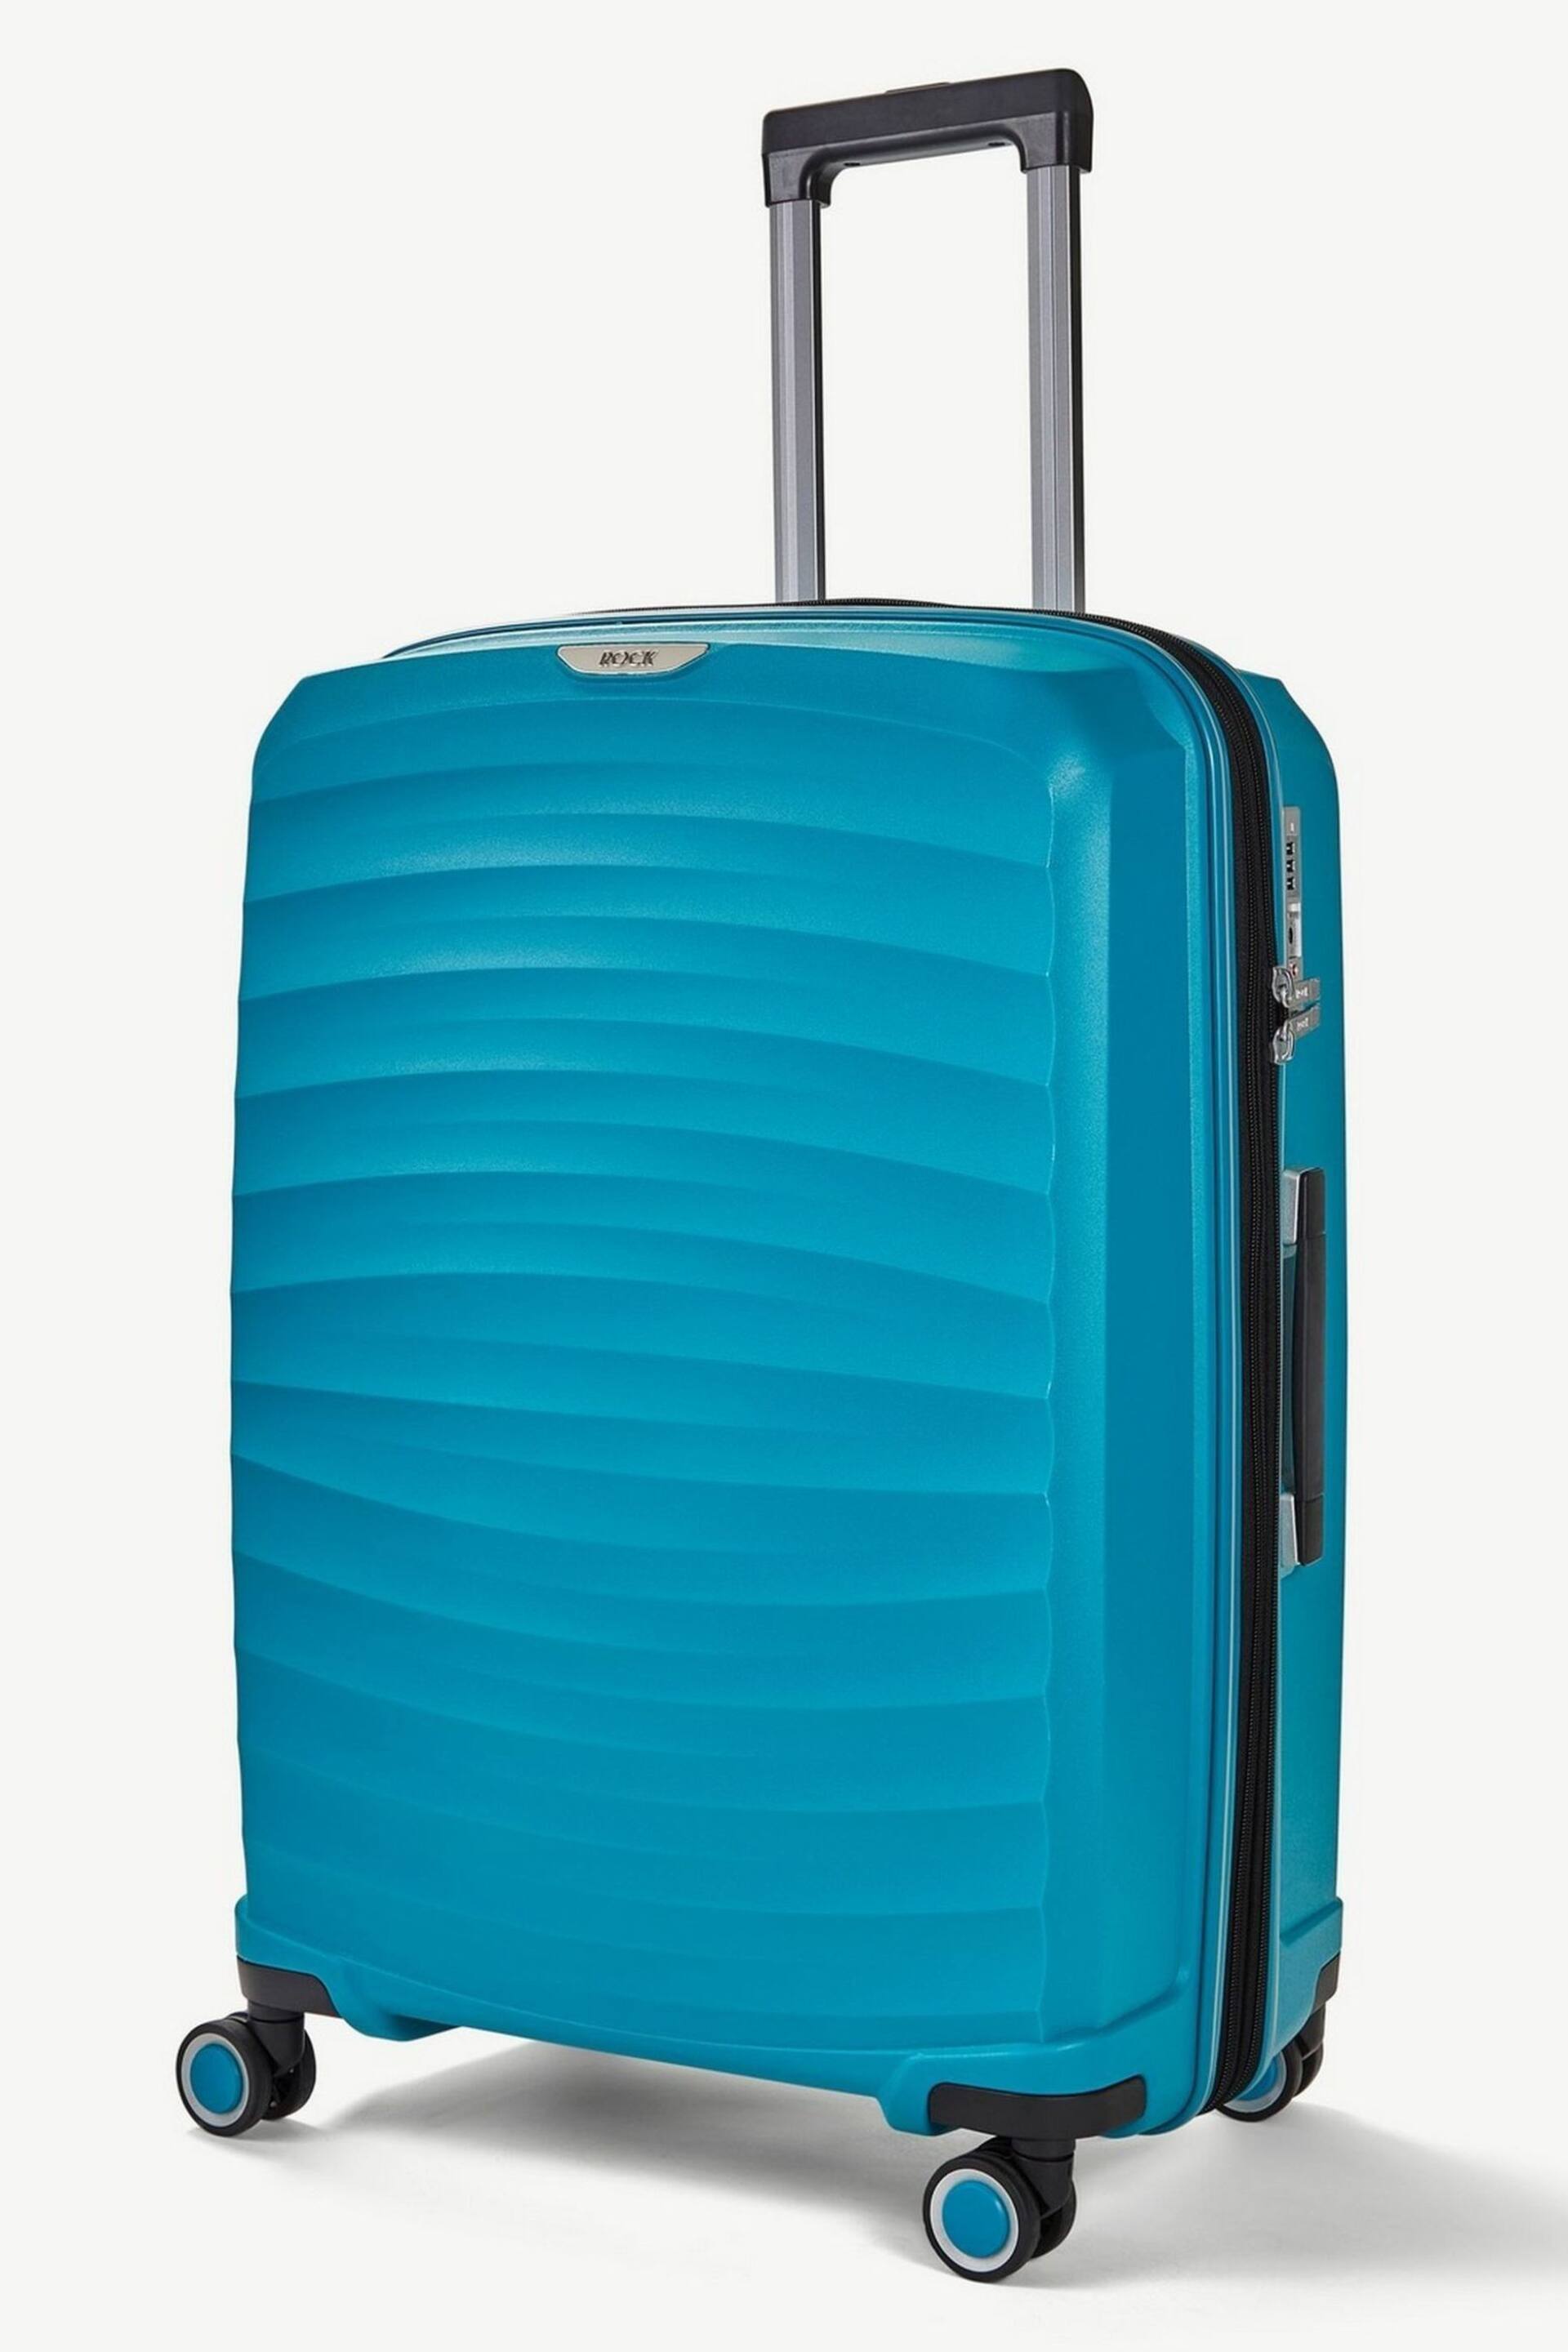 Rock Luggage Sunwave Medium Suitcase - Image 1 of 1